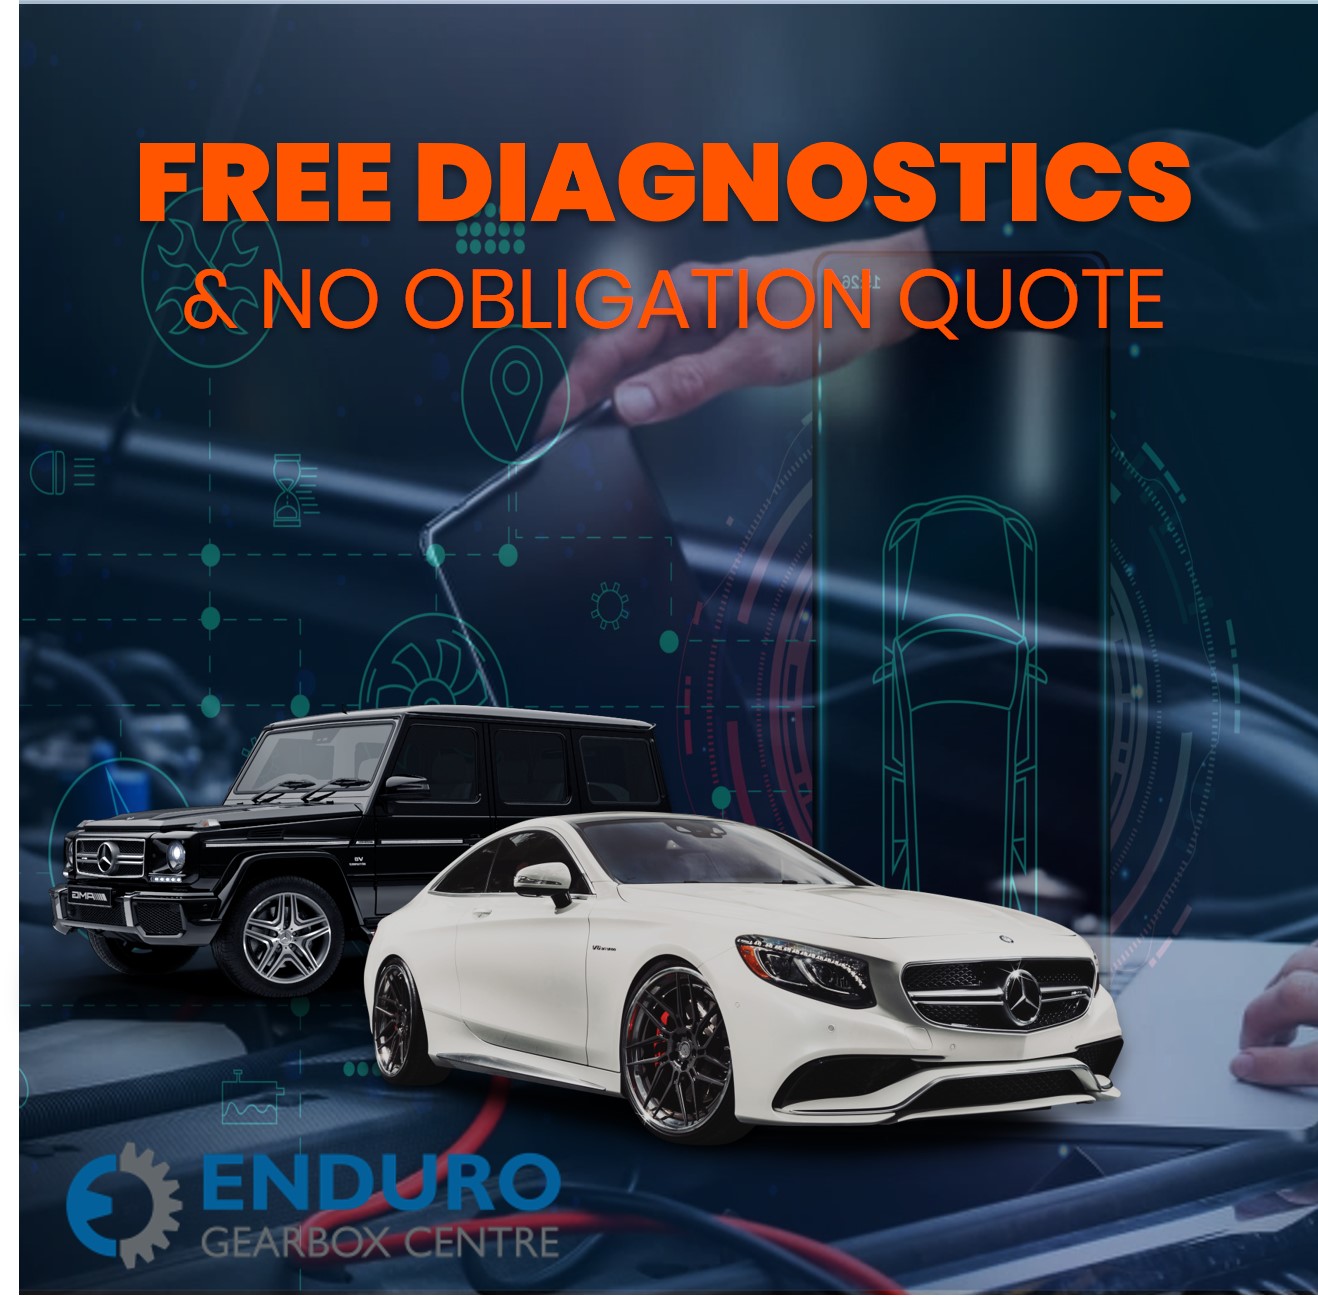 Mercedes Benz Diagnostic Services